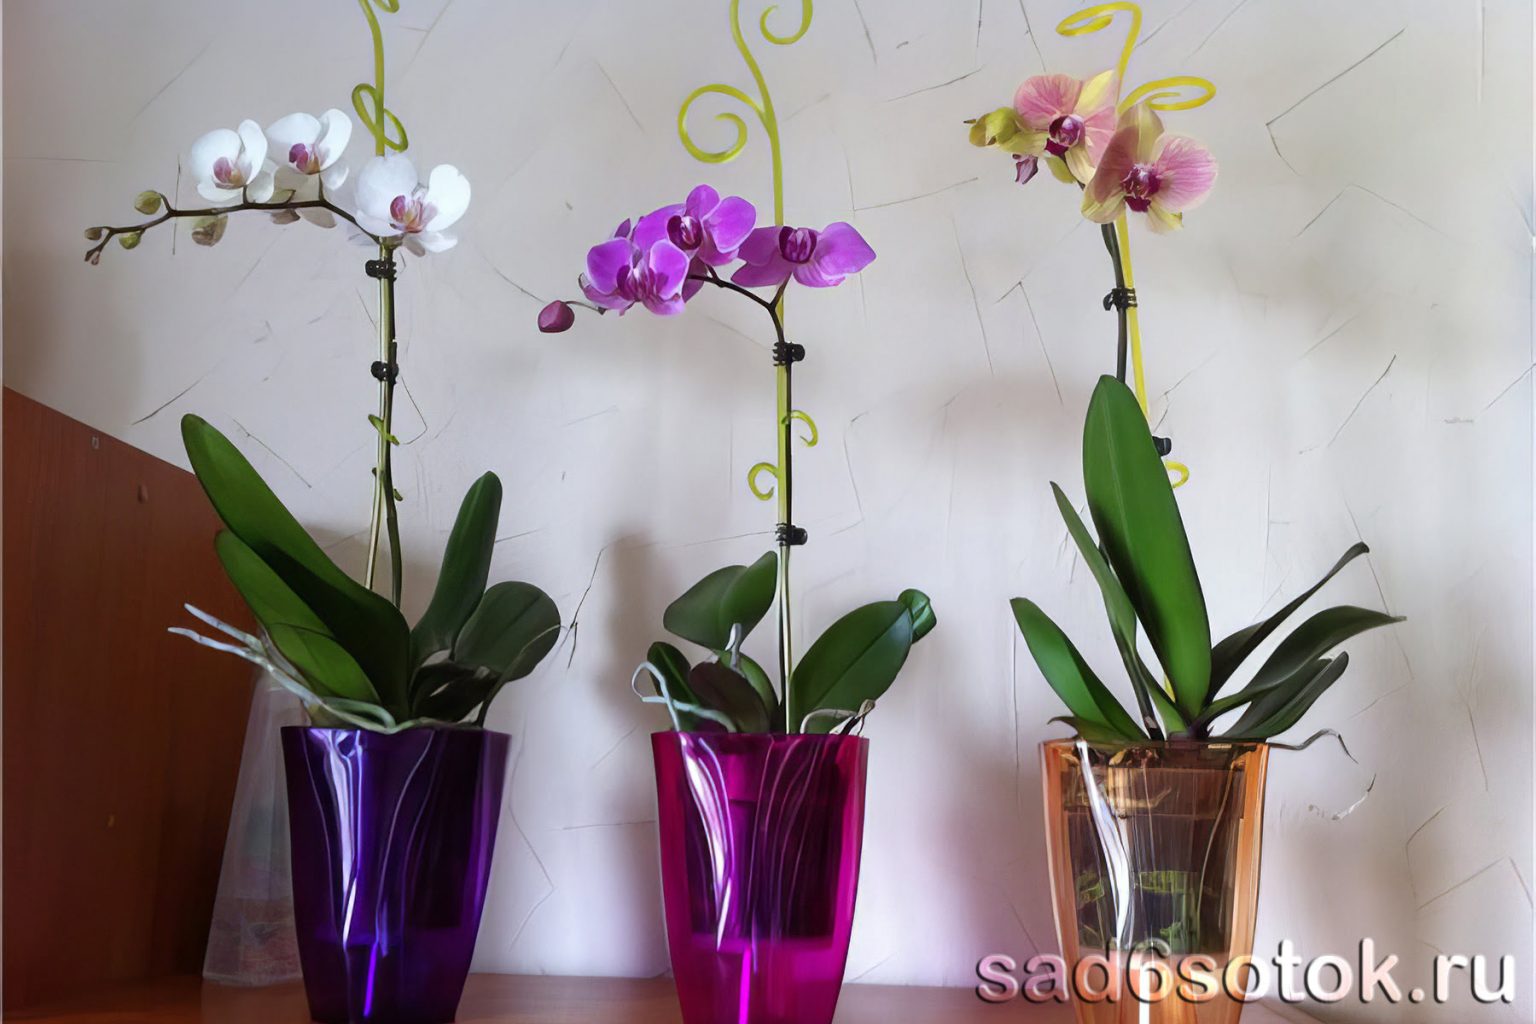 Правильный горшок для орхидеи фаленопсис